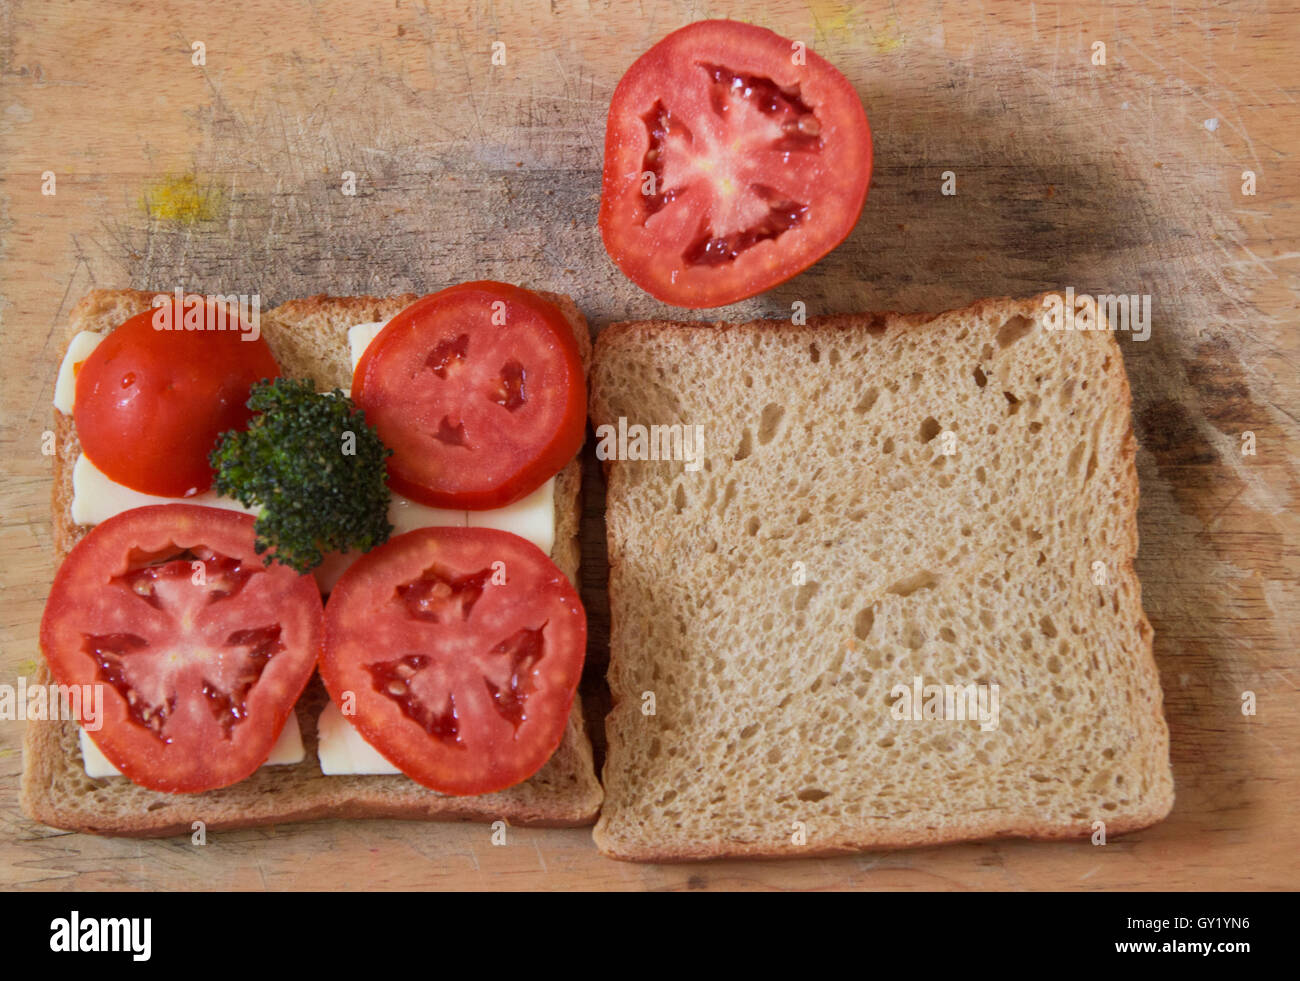 Tomato cheese broccoli wheat bread sandwich breakfast Stock Photo